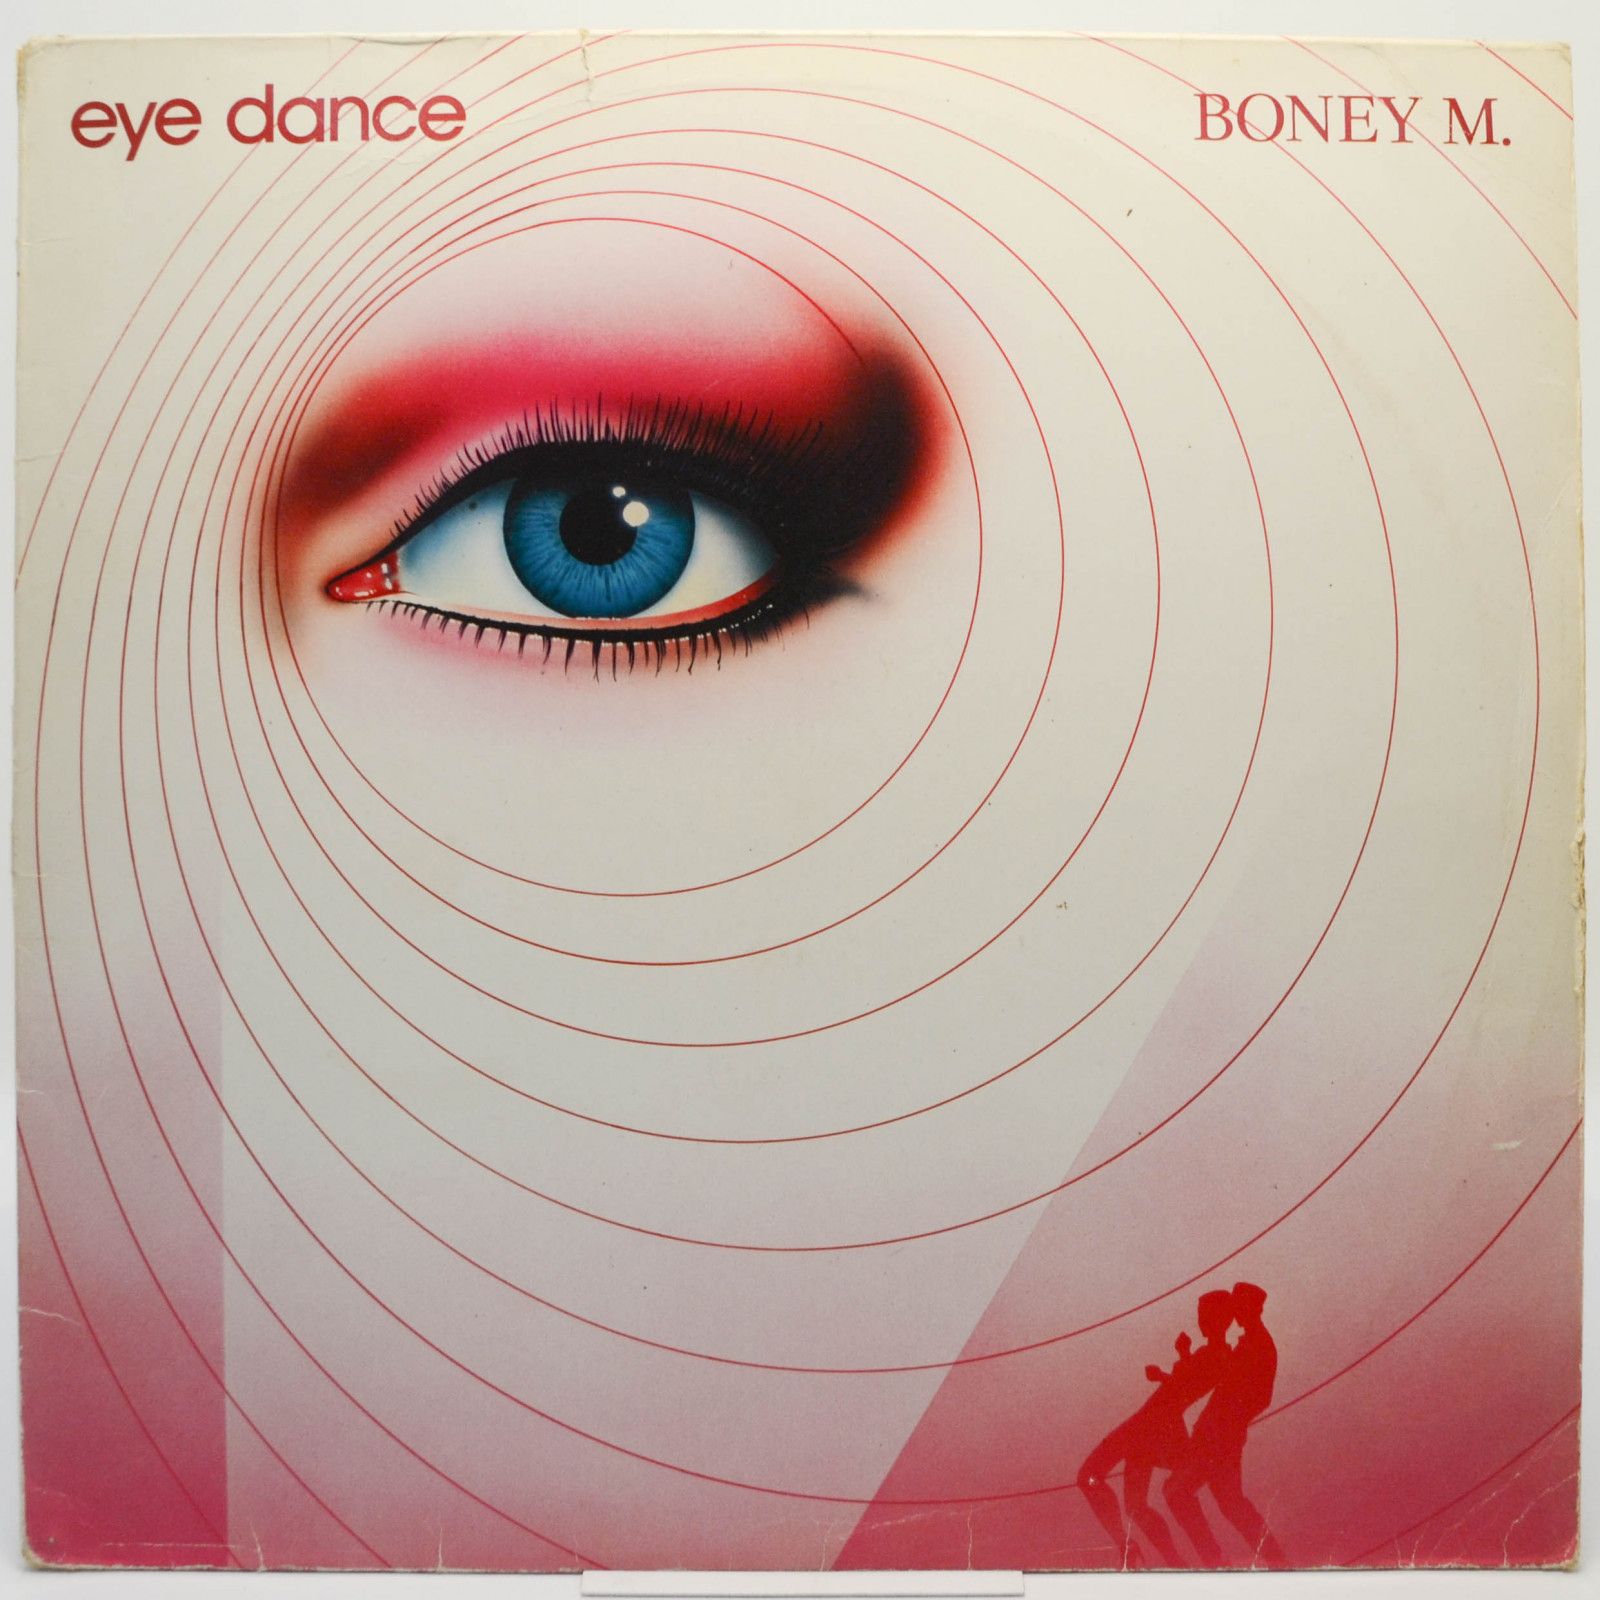 Boney M. — Eye Dance, 1985